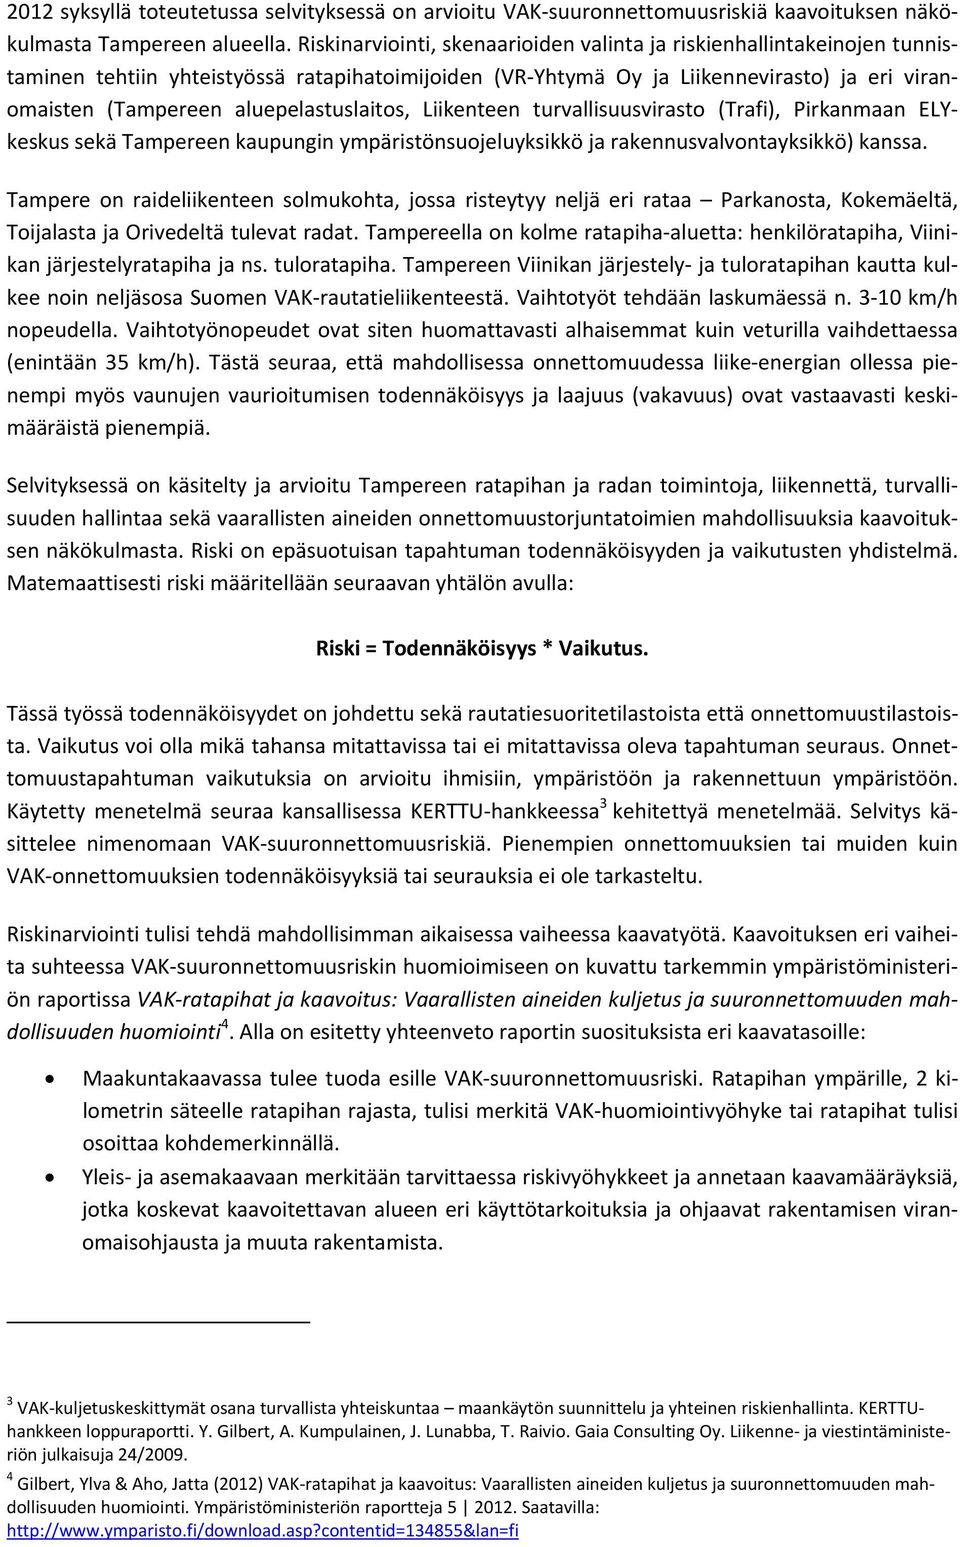 aluepelastuslaitos, Liikenteen turvallisuusvirasto (Trafi), Pirkanmaan ELYkeskus sekä Tampereen kaupungin ympäristönsuojeluyksikkö ja rakennusvalvontayksikkö) kanssa.